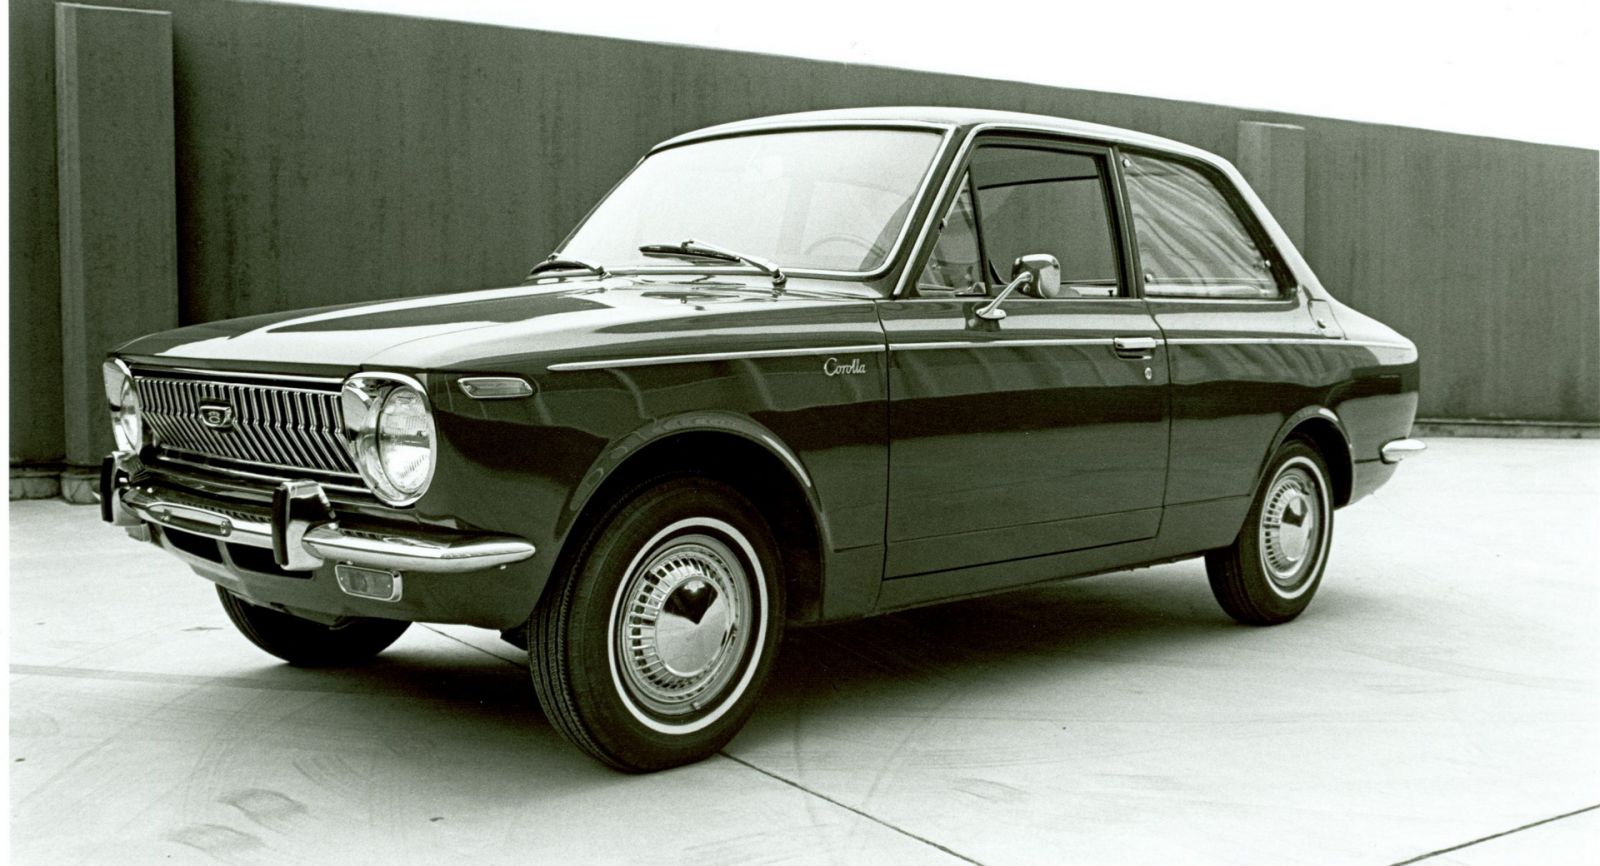 Chiếc Toyota Corolla đầu tiên ra đời 1969 trải qua nhiều phiên bản vẫn giữ ngôi vị xe bán chạy nhất mọi thời đại